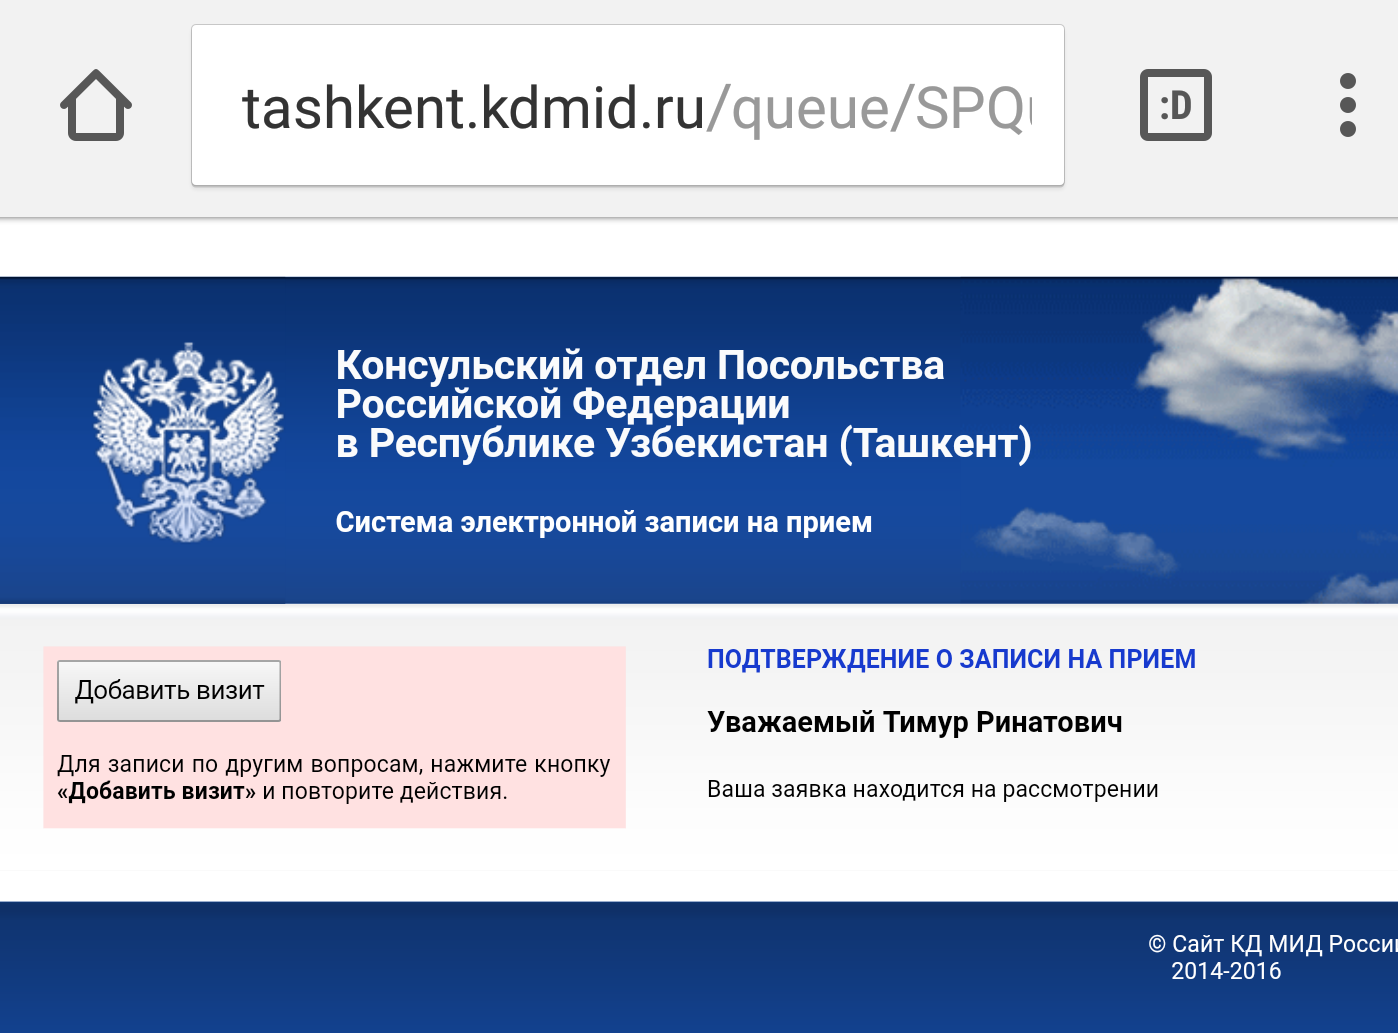 Генеральное консульство республики польша в санкт-петербурге - польша в россии - веб-сайт gov.pl